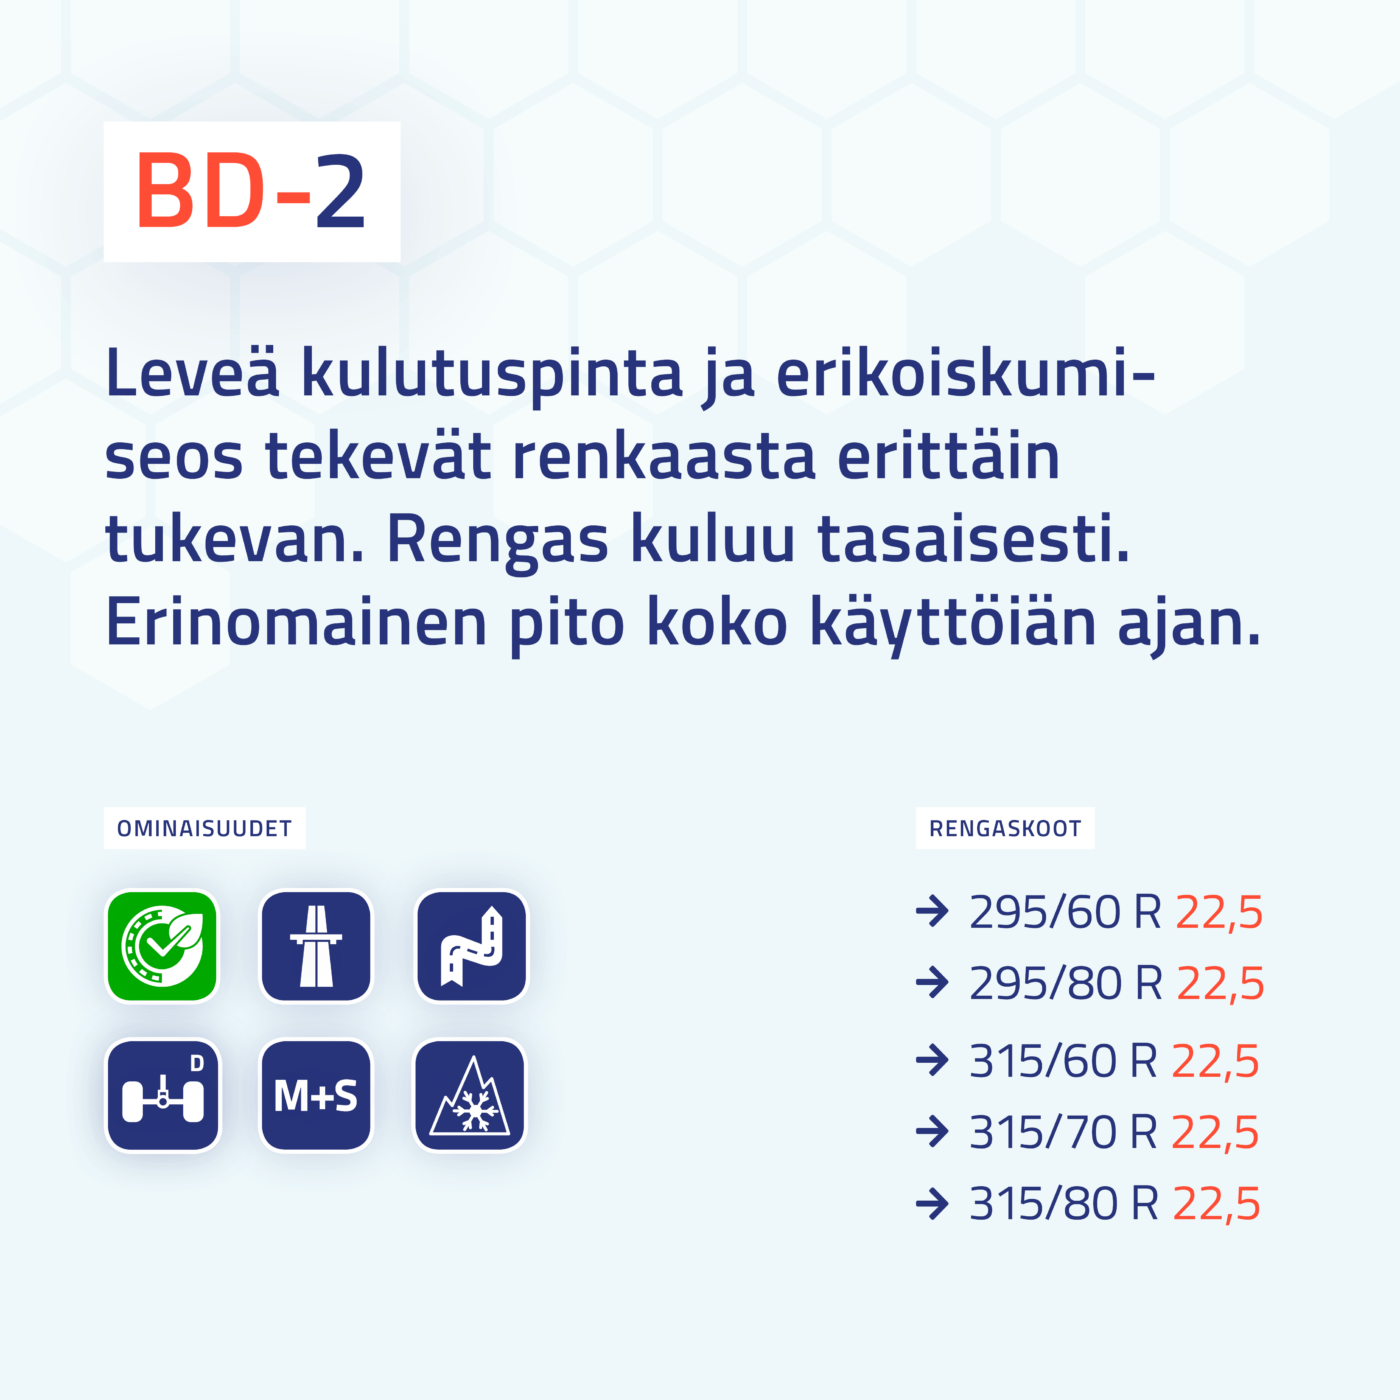 BD-2